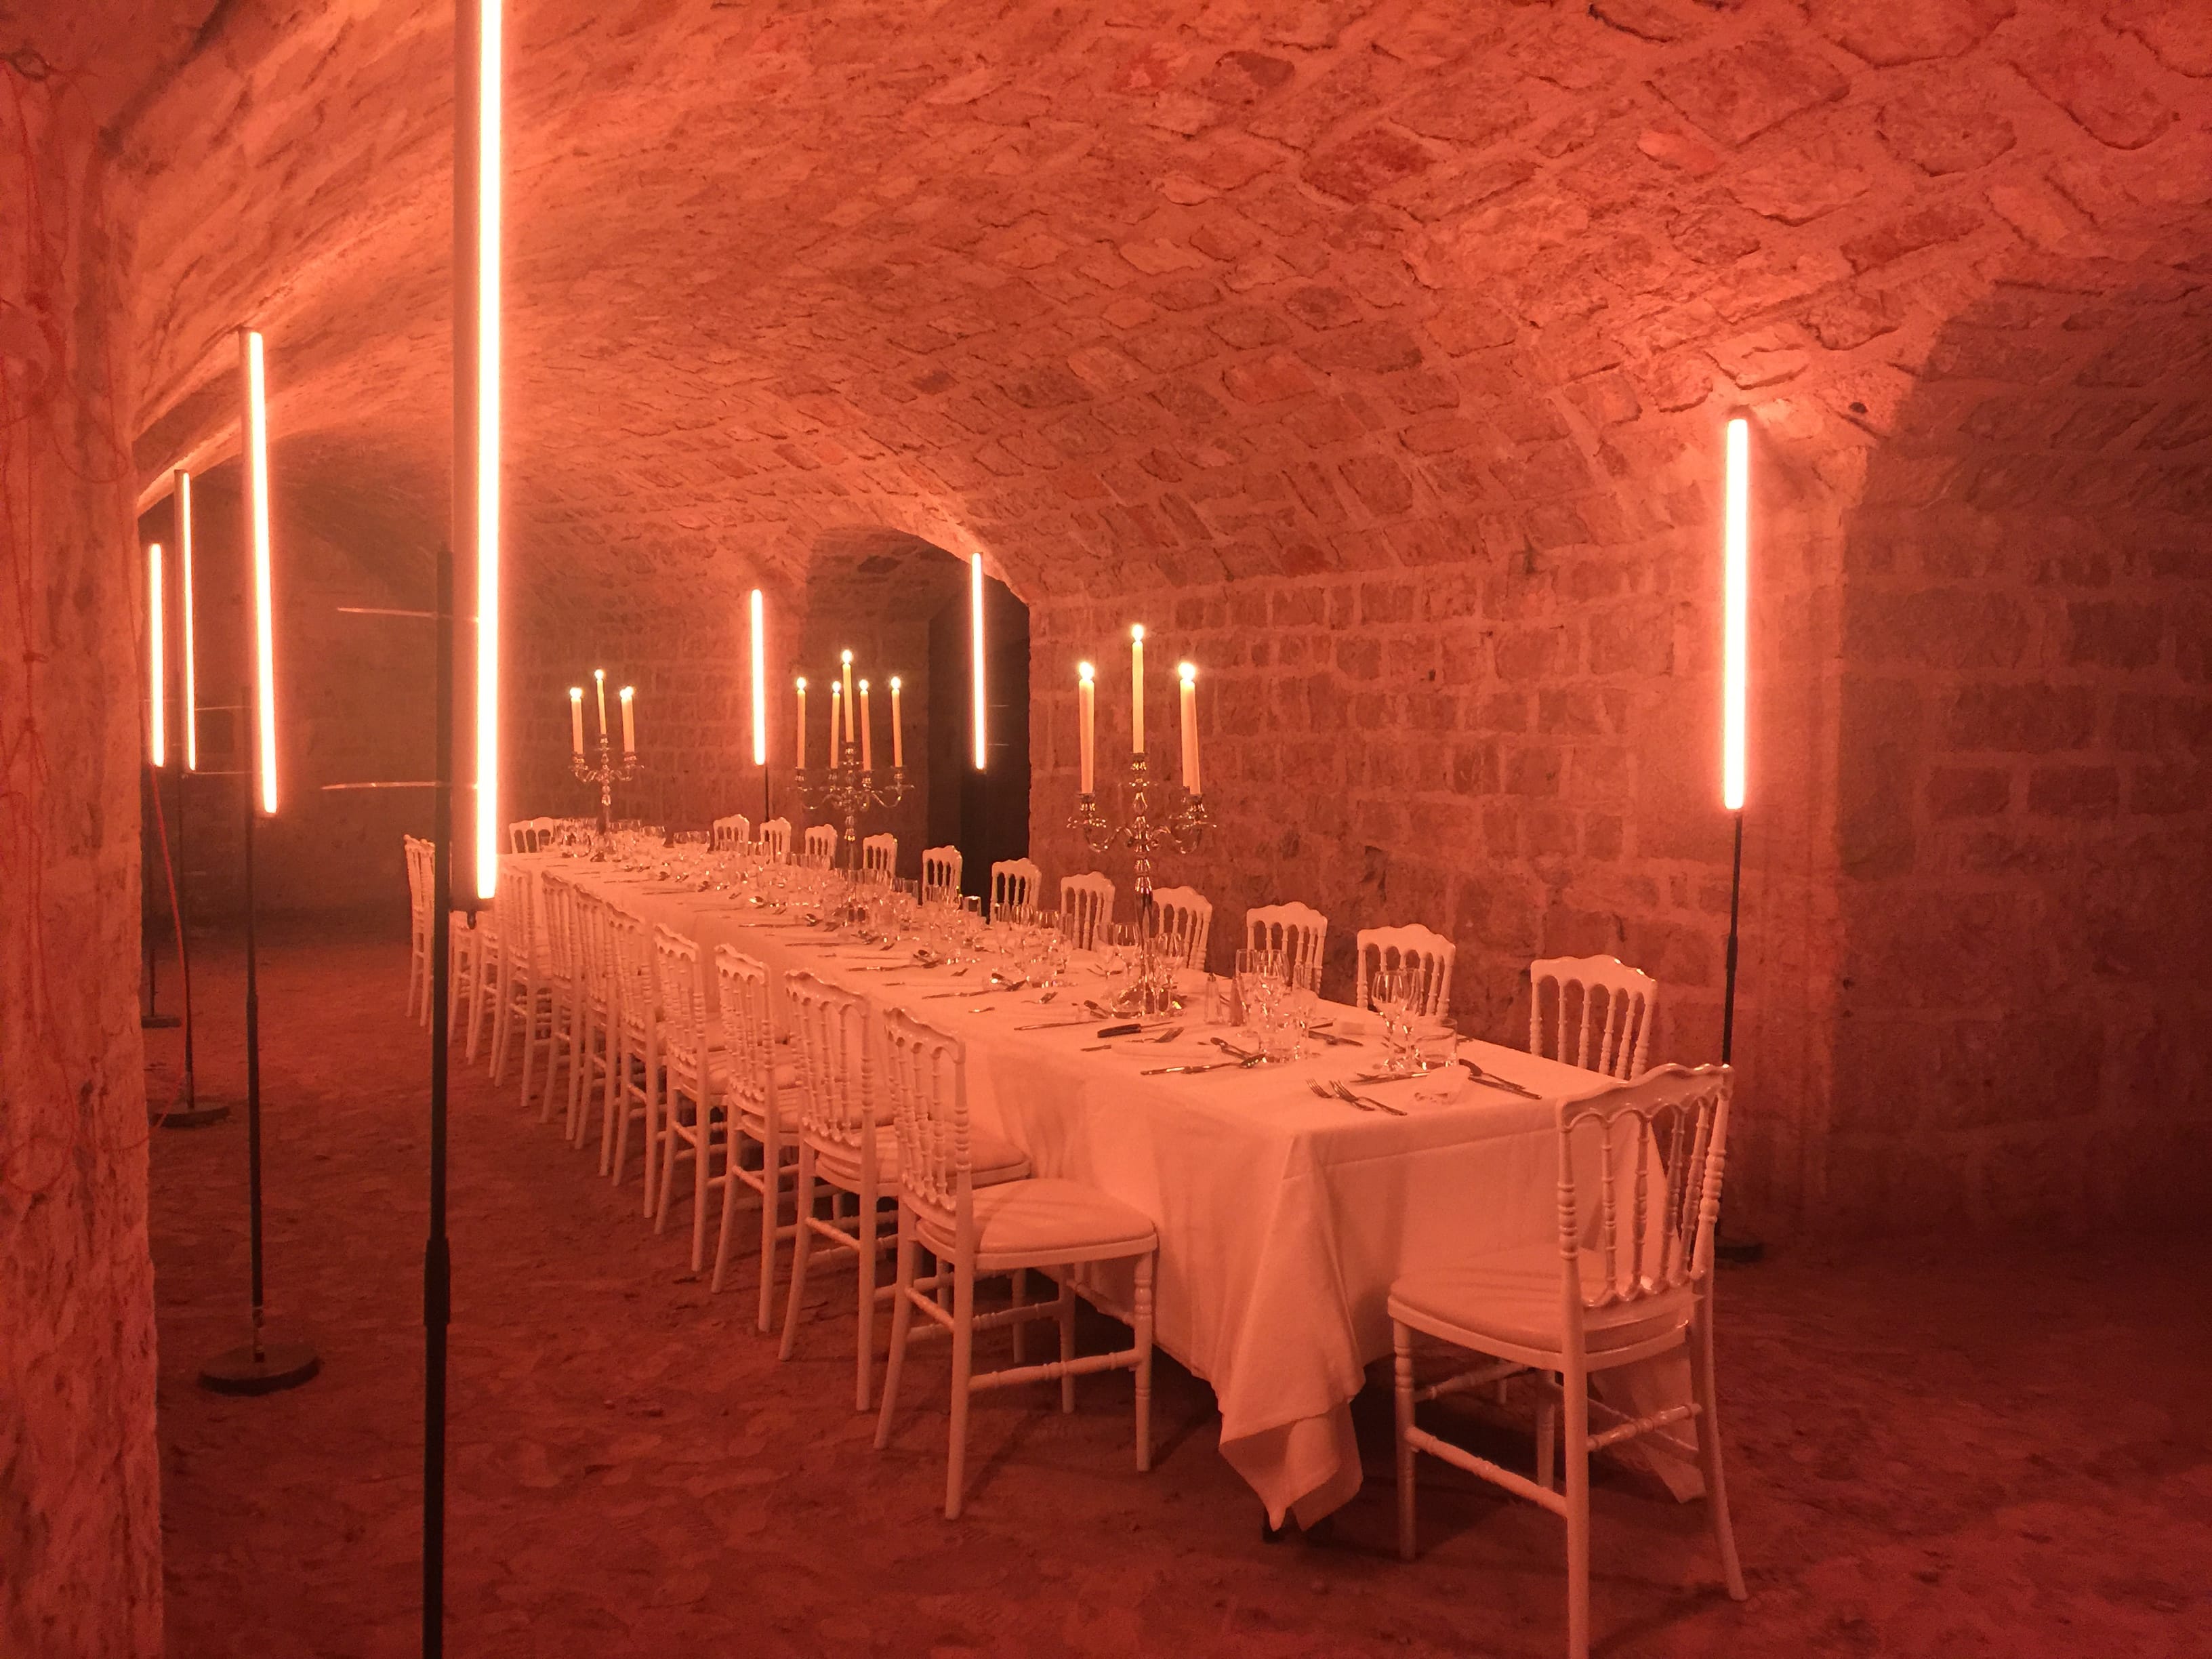 leboncoin : Diner militaire dans une forteresse à Lyon